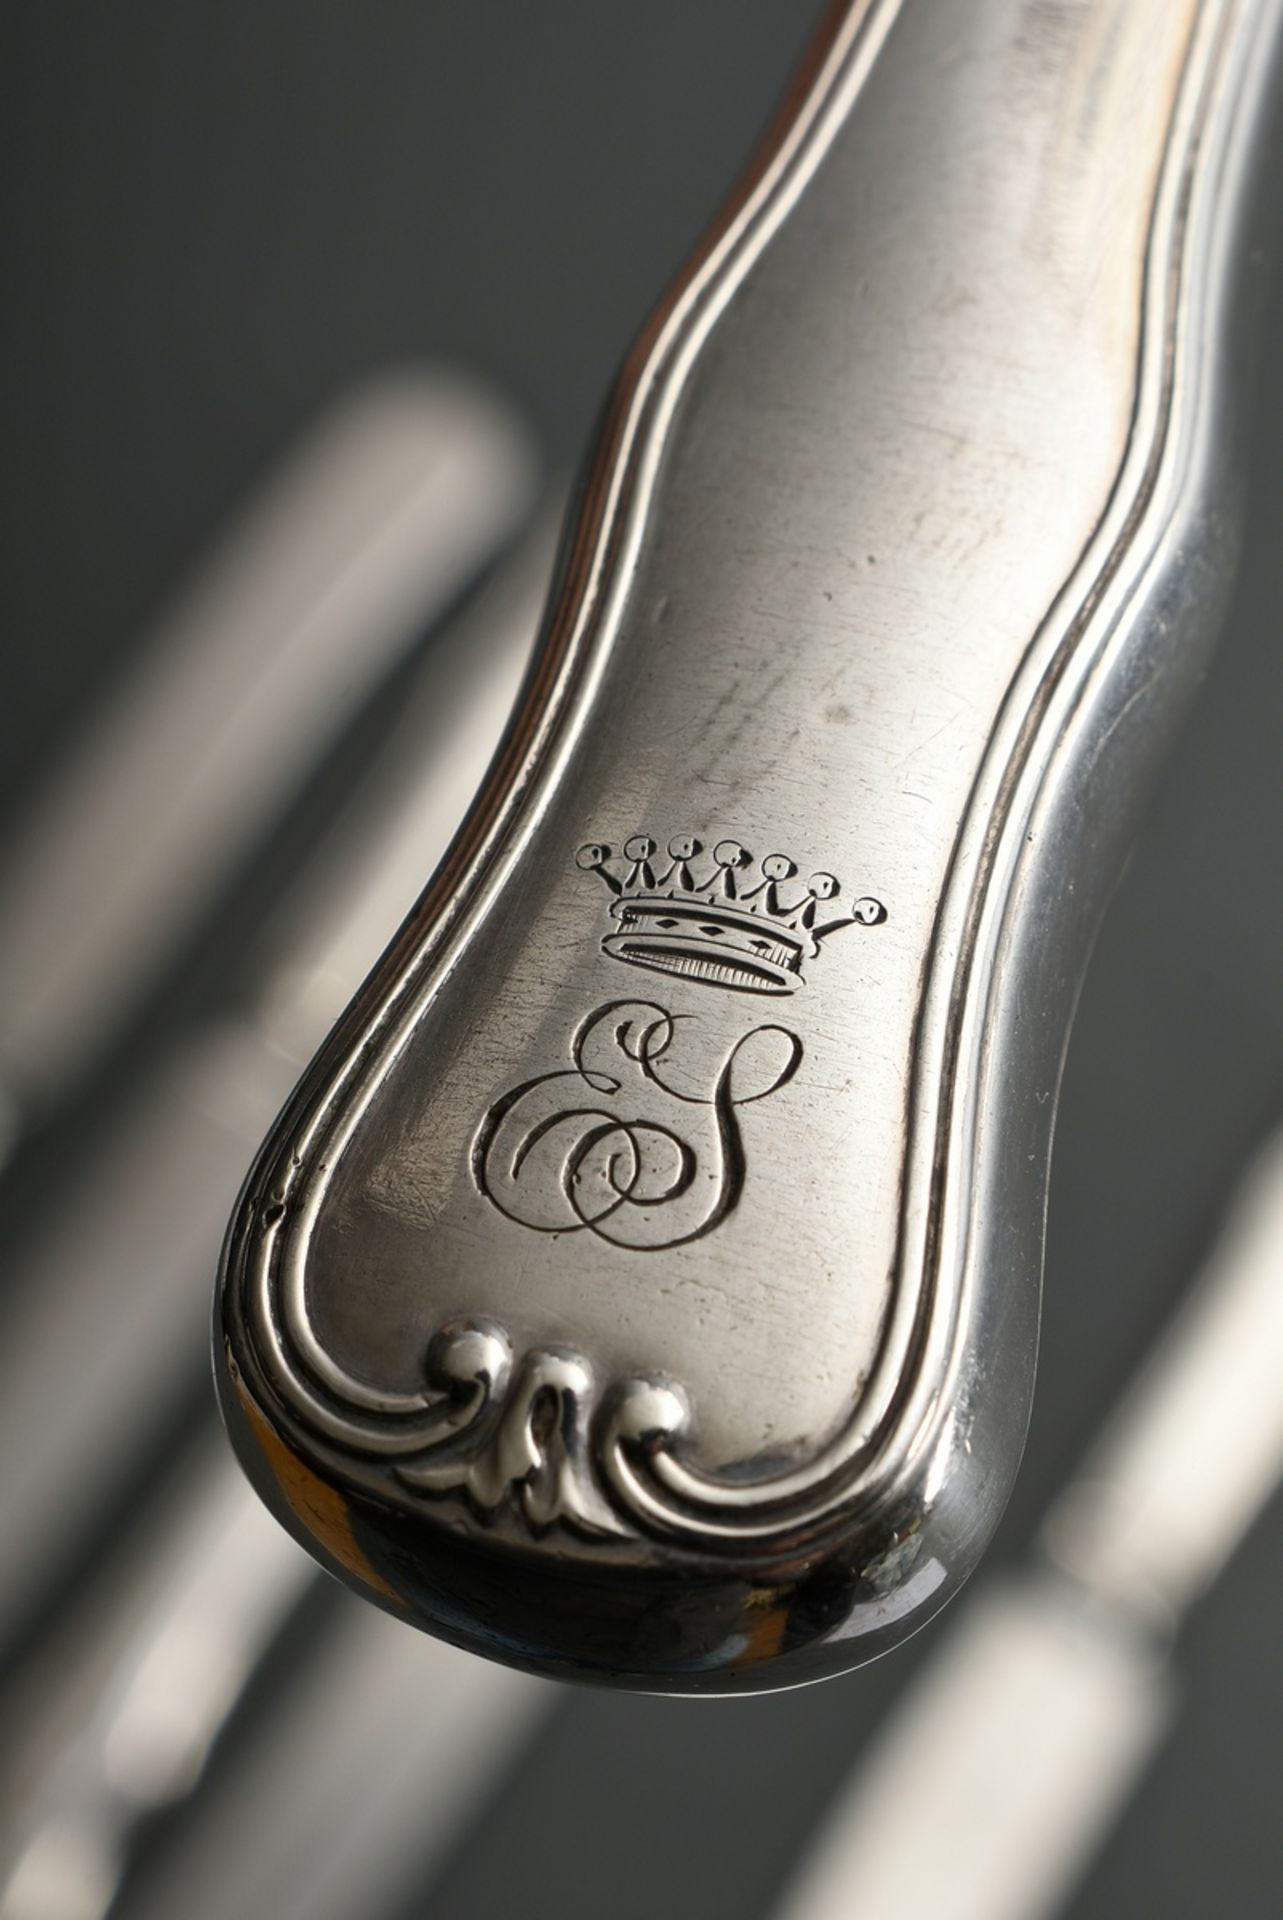 6 Große Messer mit aufgelegtem Wappen "Rose unter geflügeltem Helm" und Monogramm "EJ" unter Krone, - Bild 4 aus 6